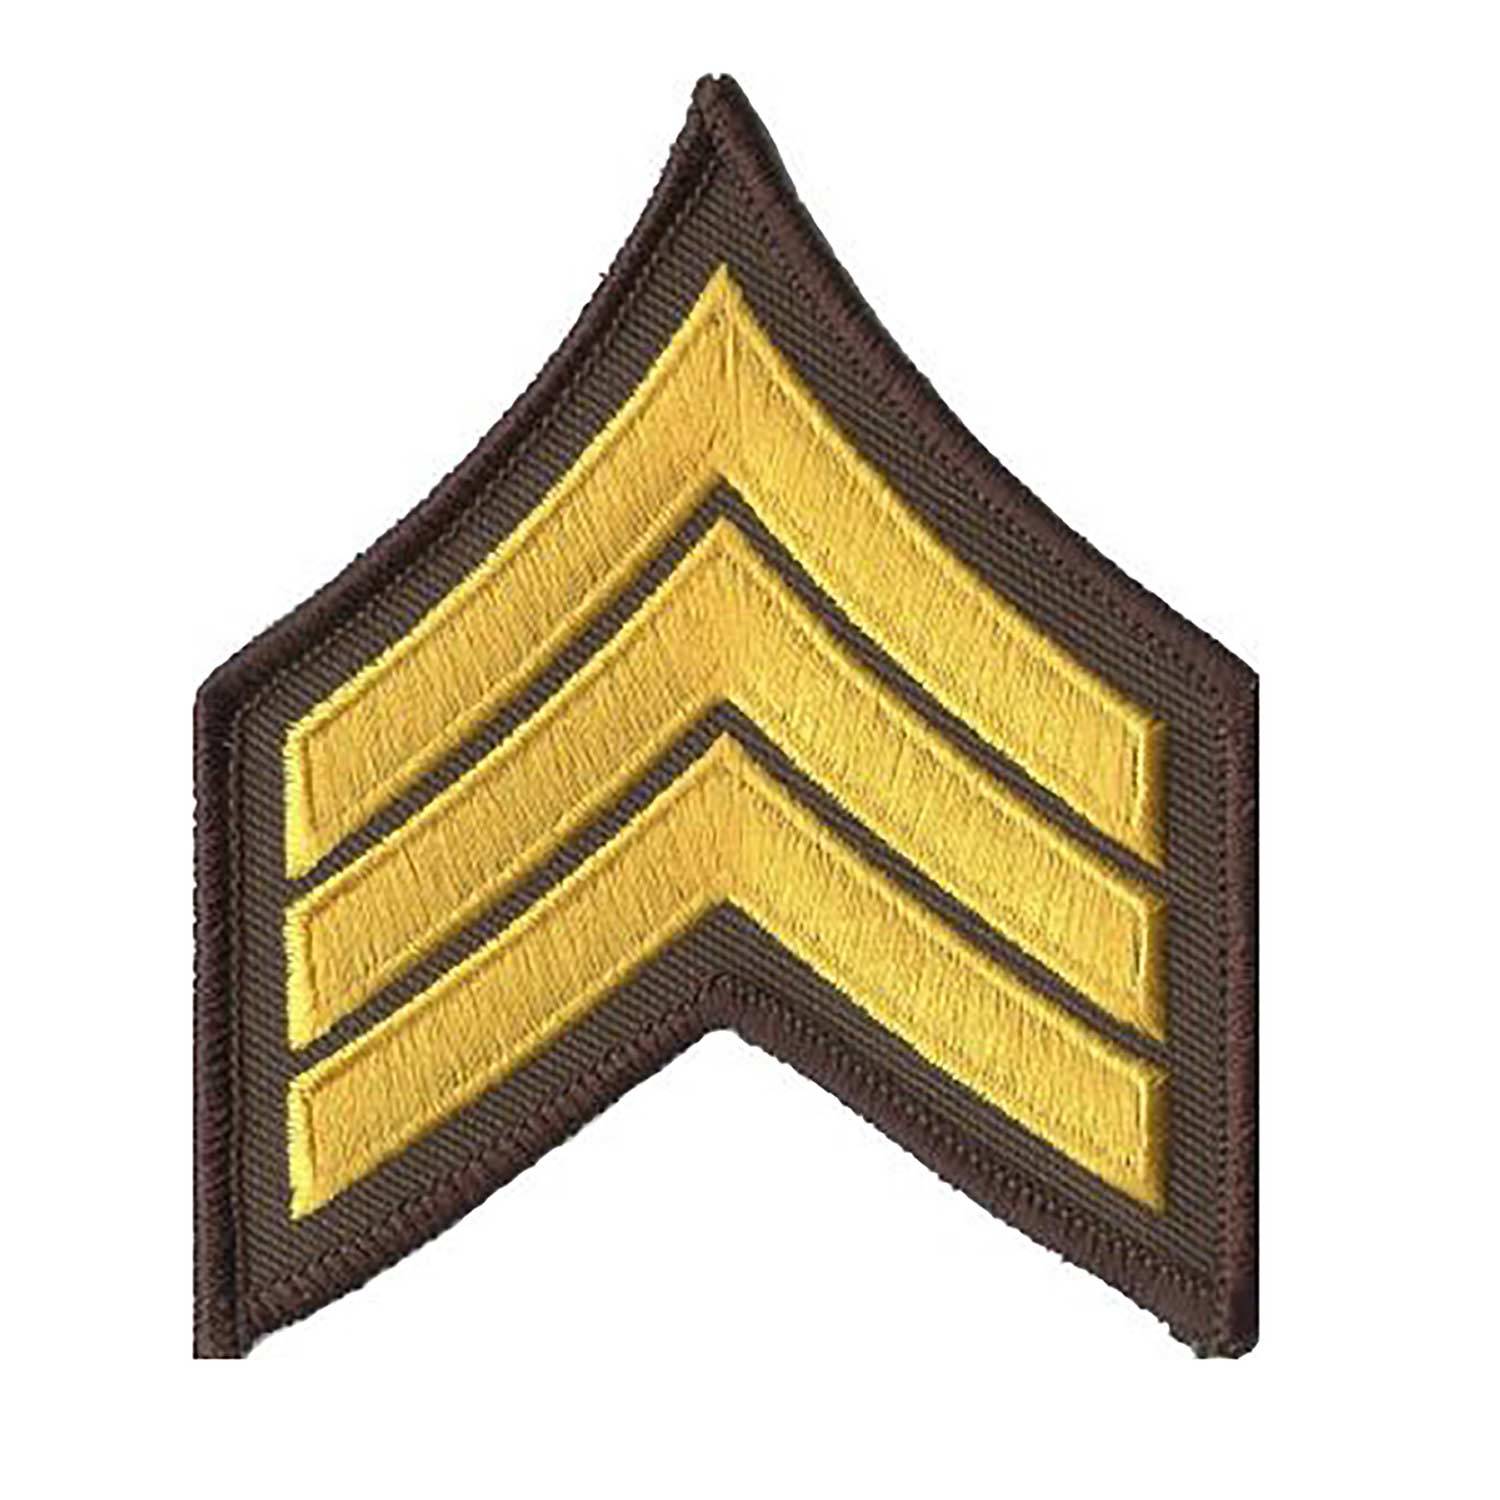 Premier Emblem Deluxe Sergeant Chevrons Stitched Border 3 1/